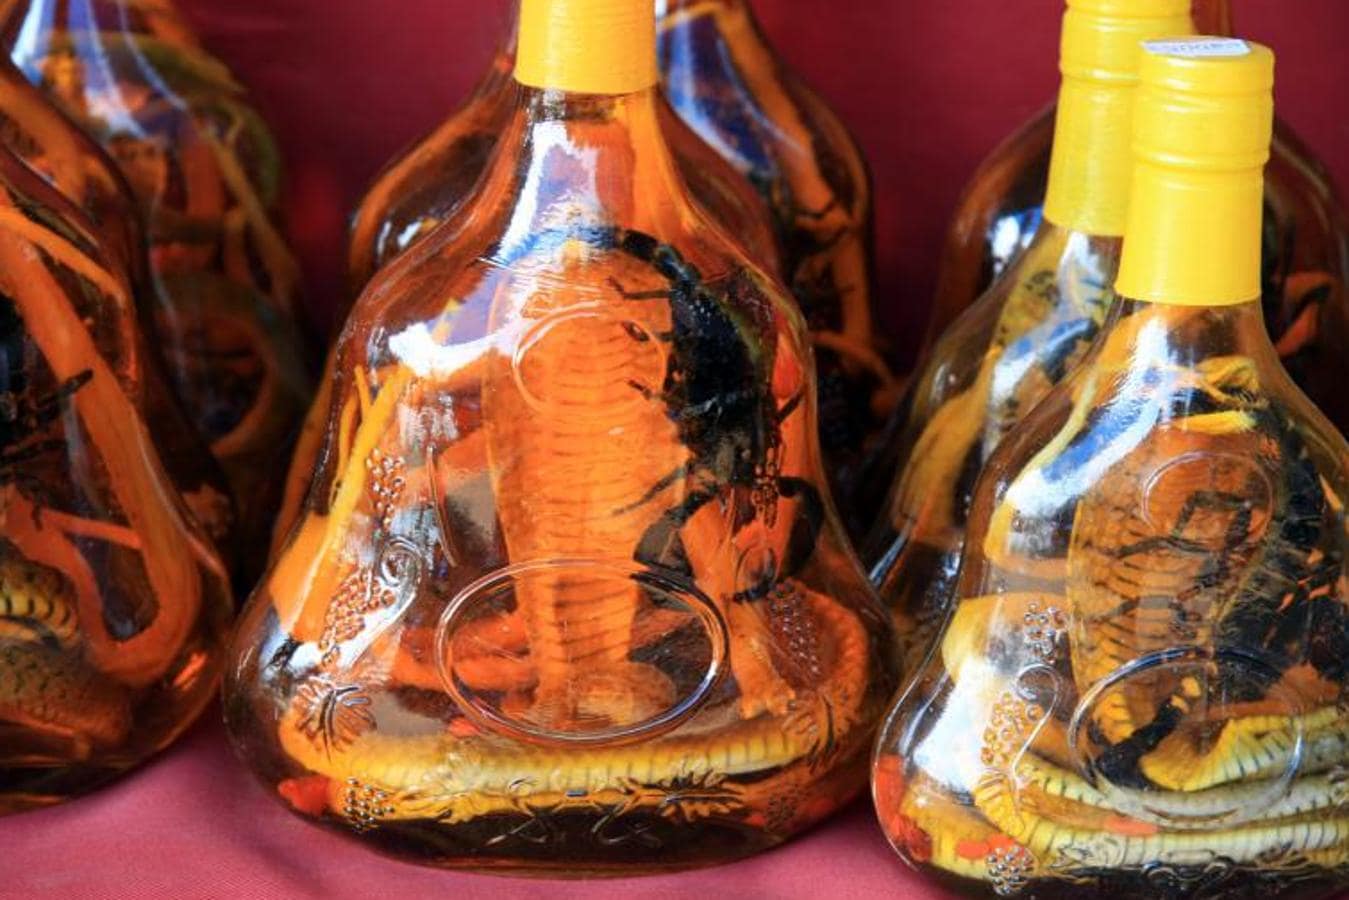 El vino de serpiente, consumido sobre todo en el sureste de Asia, es una mezcla entre los fluidos y la sangre de la serpiente con el alcohol, que tiene su origen en Vietnam. Esta extraña combinación, además de otorgarle un sabor peculiar, se dice que tiene propiedades curativas. 